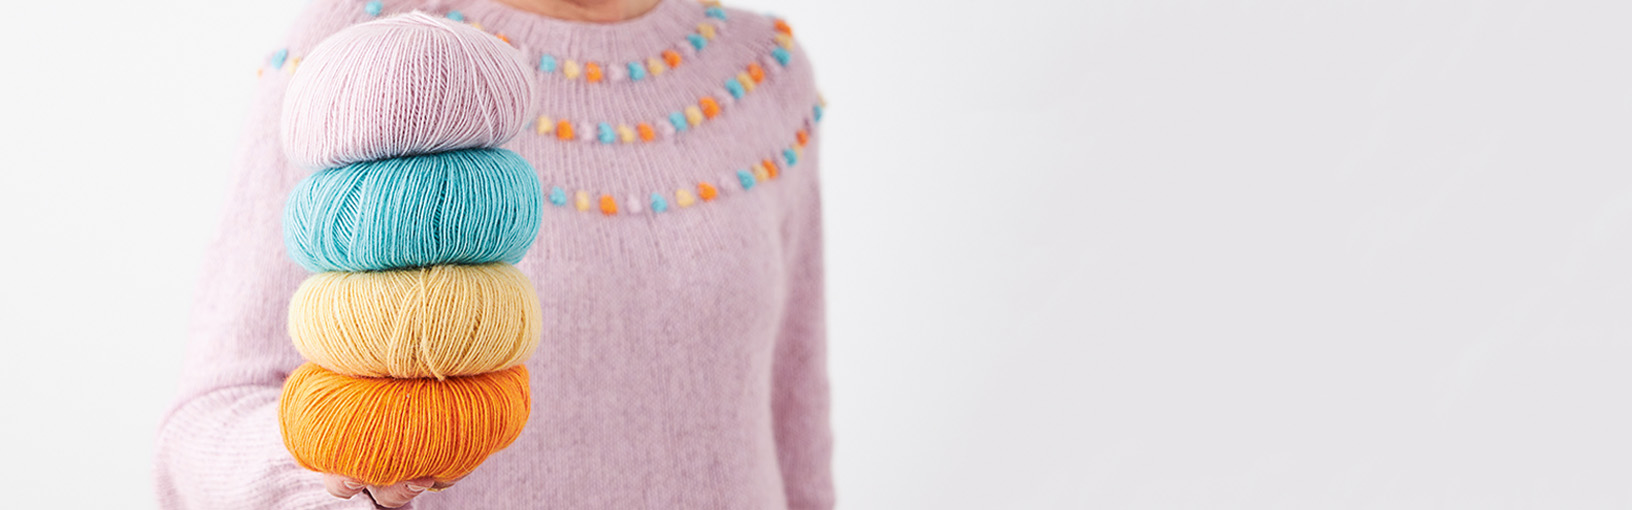 High quality yarns for knitting, crocheting & felting Lana Grossa Yarns | Feltro - Felt Yarns